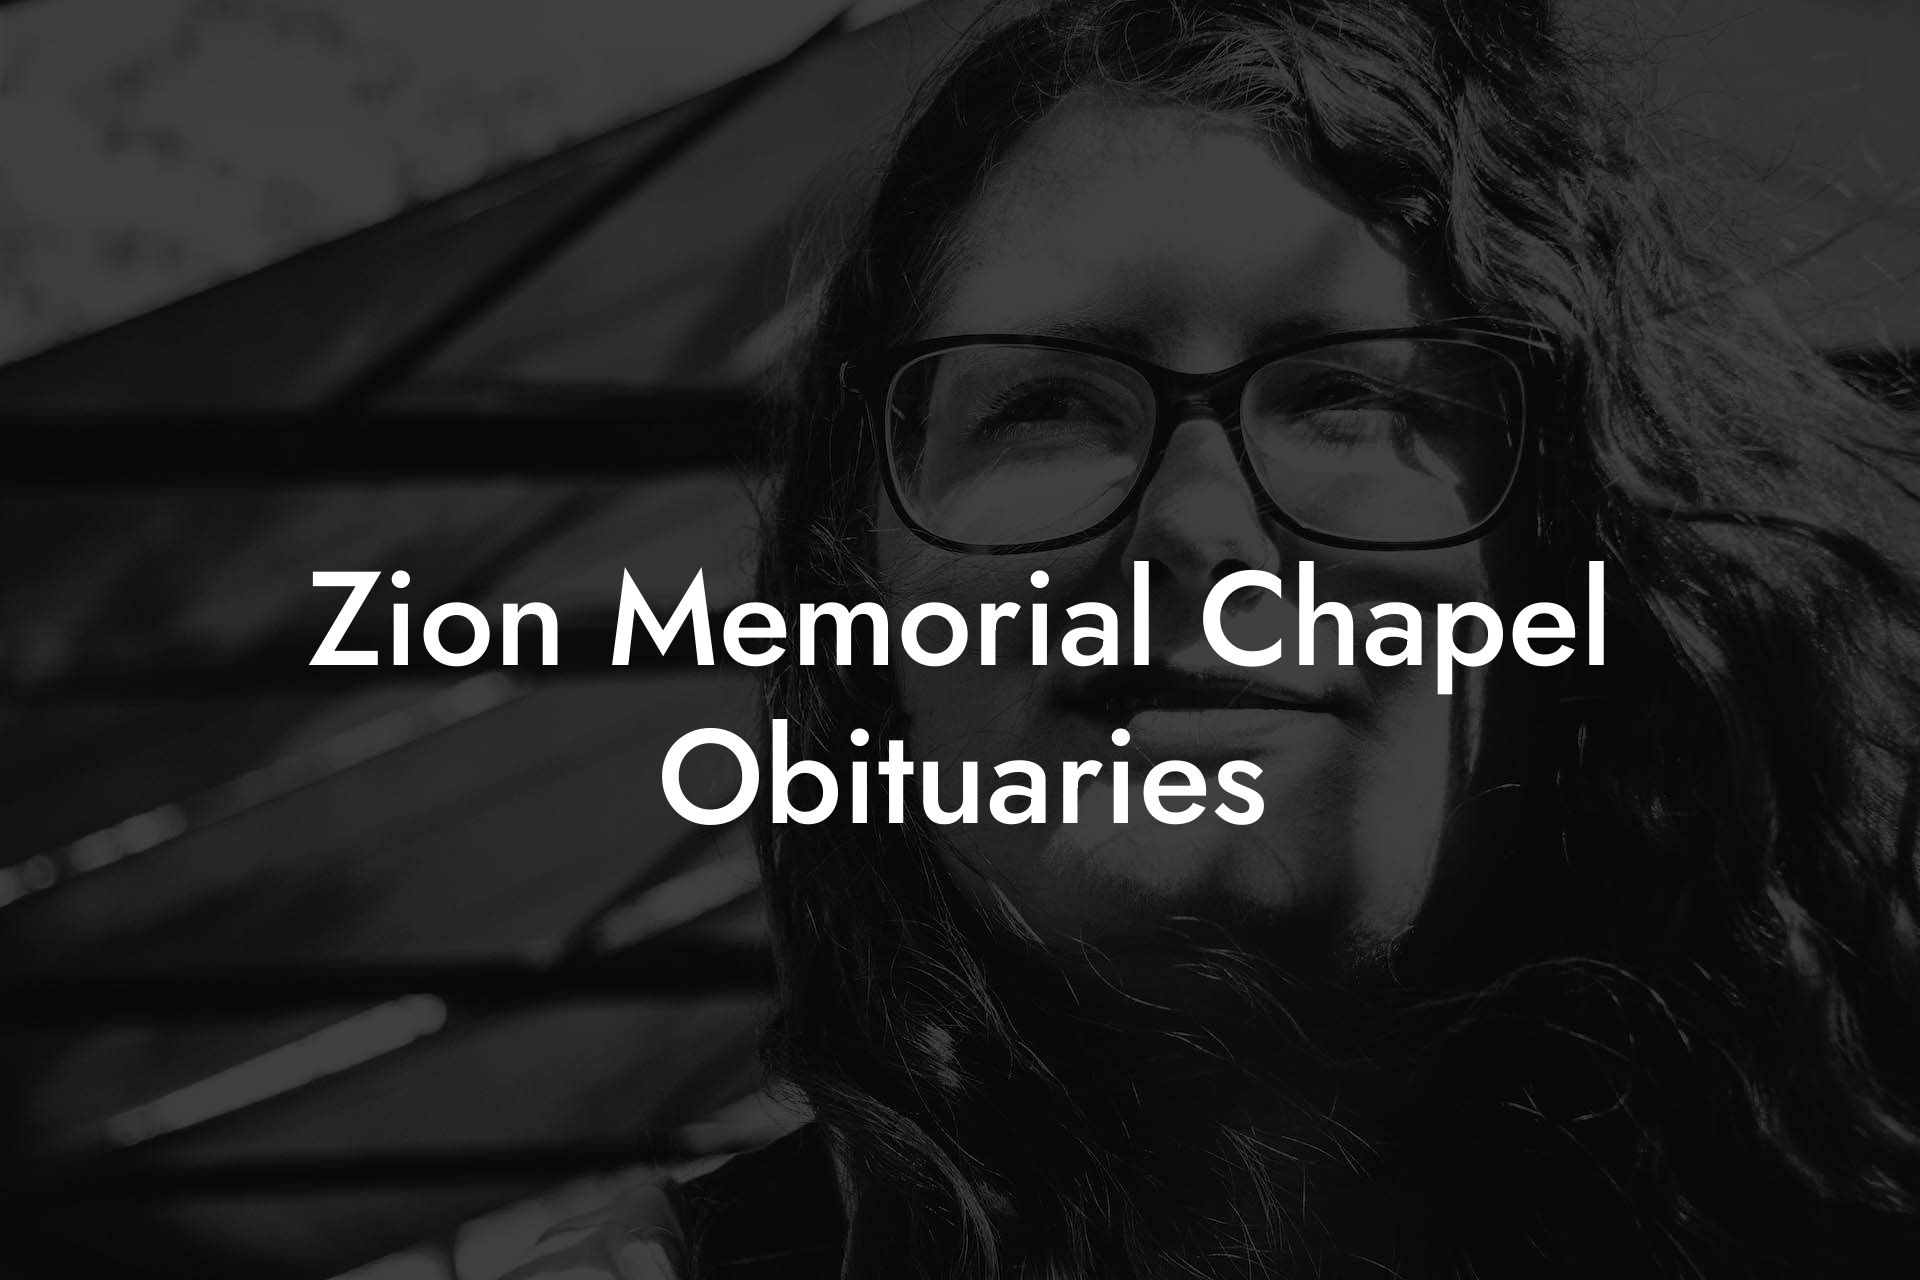 Zion Memorial Chapel Obituaries